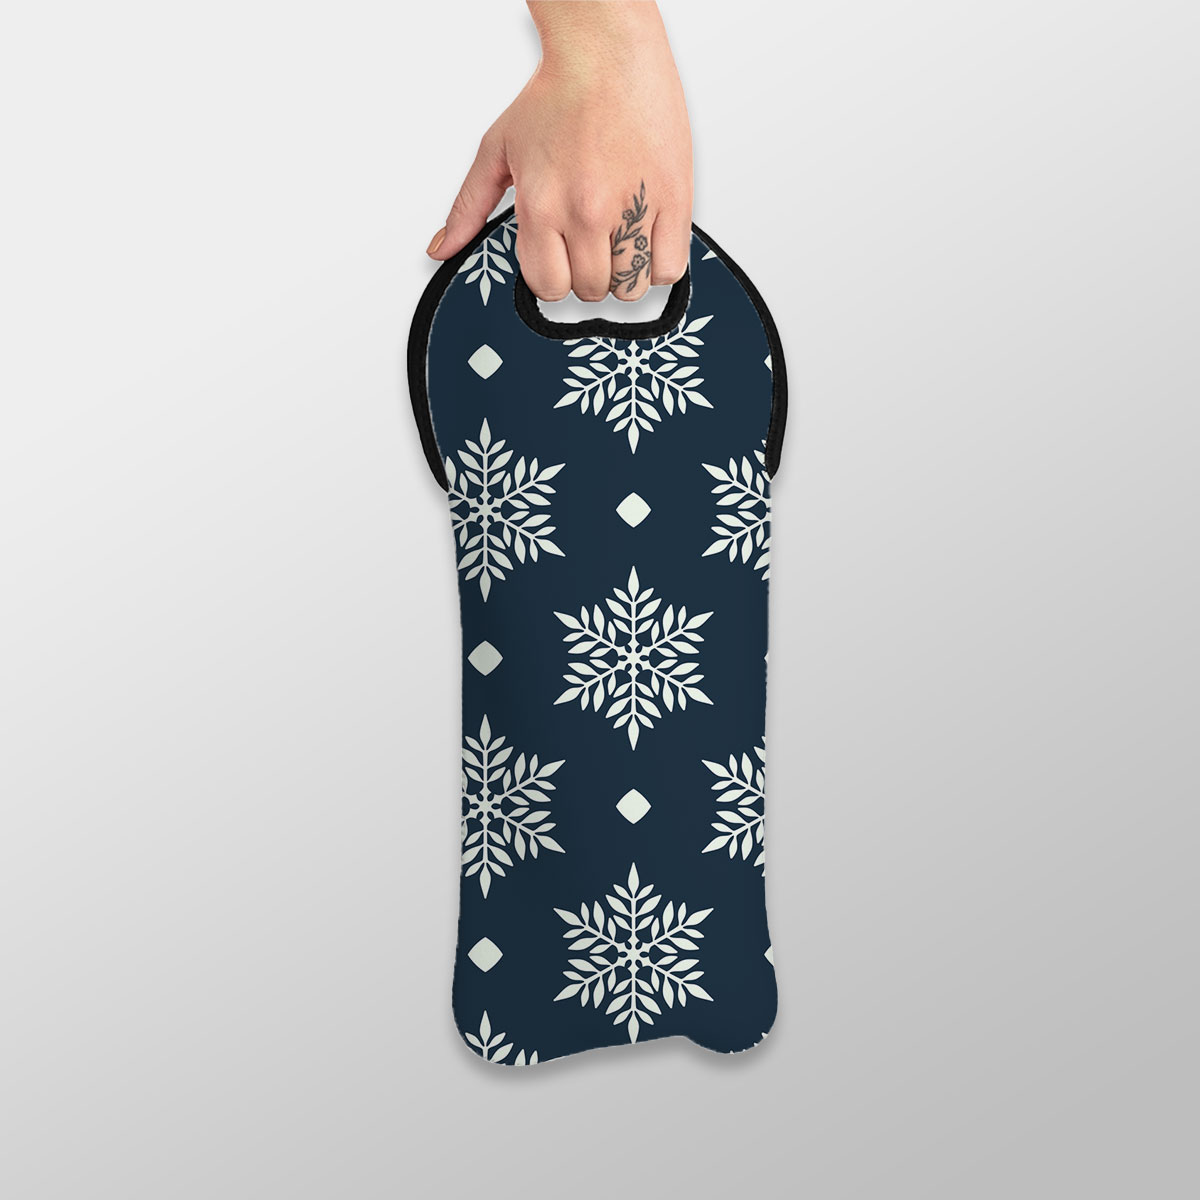 Snowflake On Dark Blue Background Wine Tote Bag